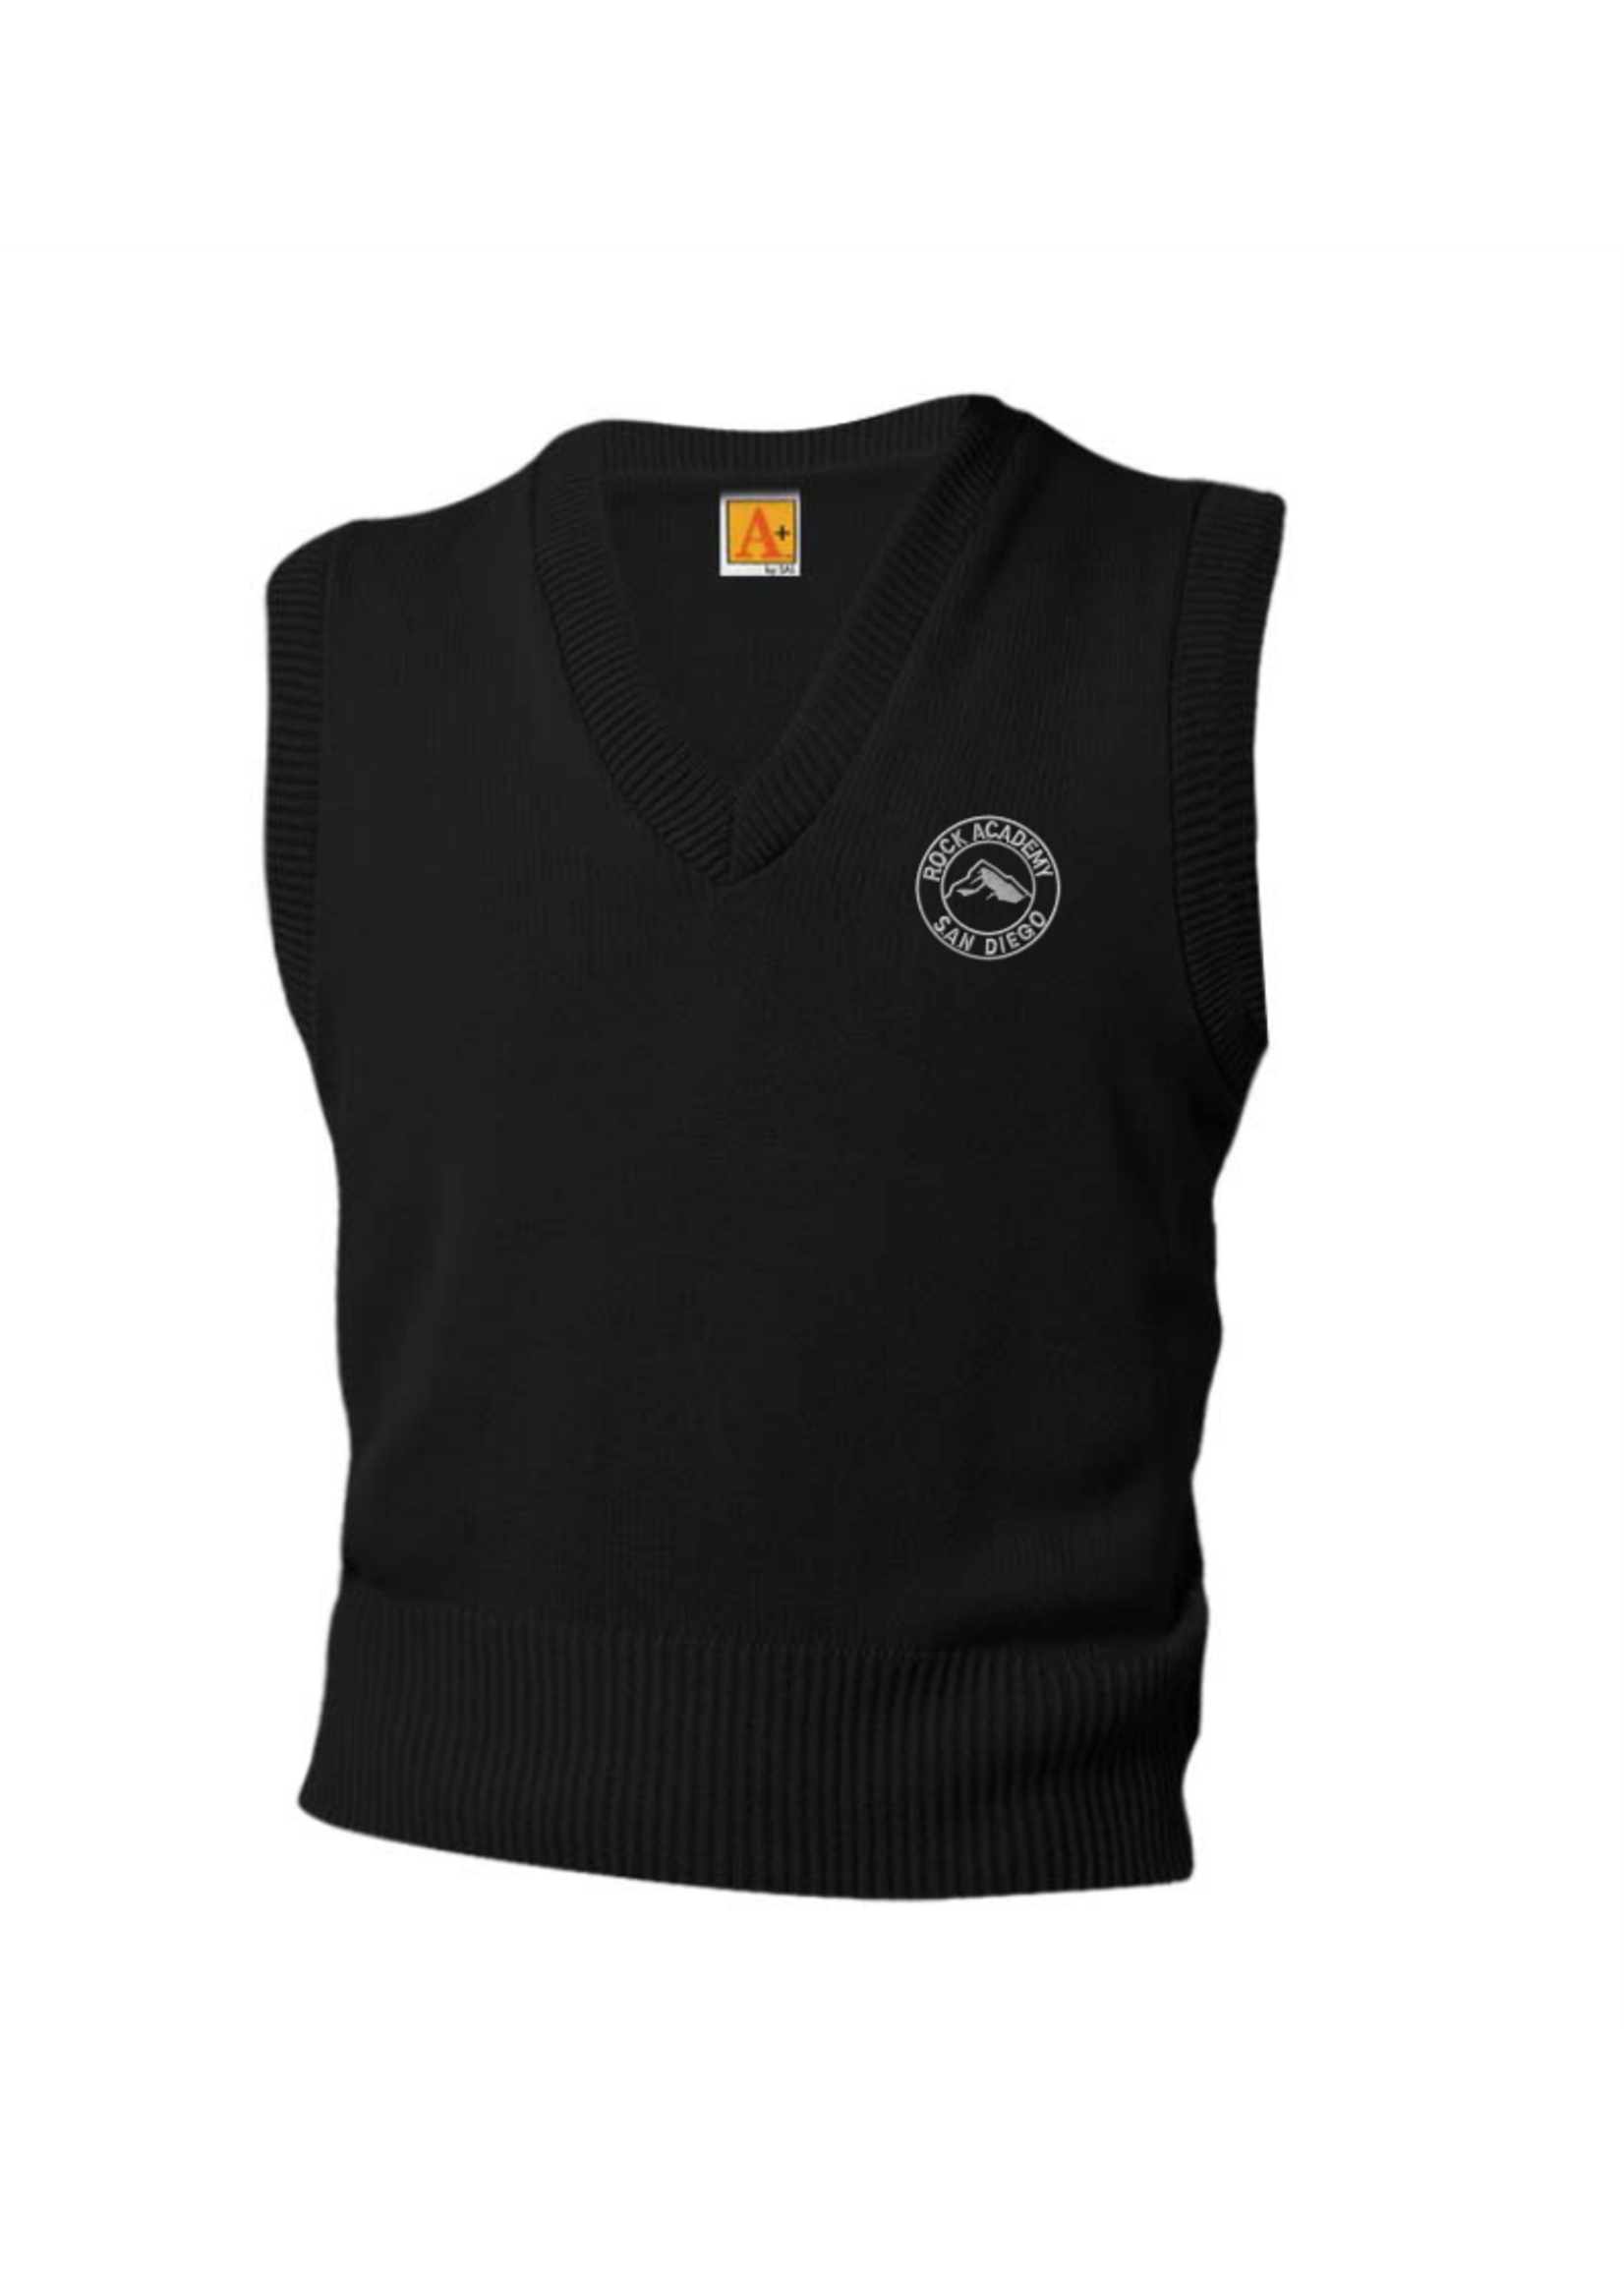 6600 ROCK Sweater Vest - The Uniform Store